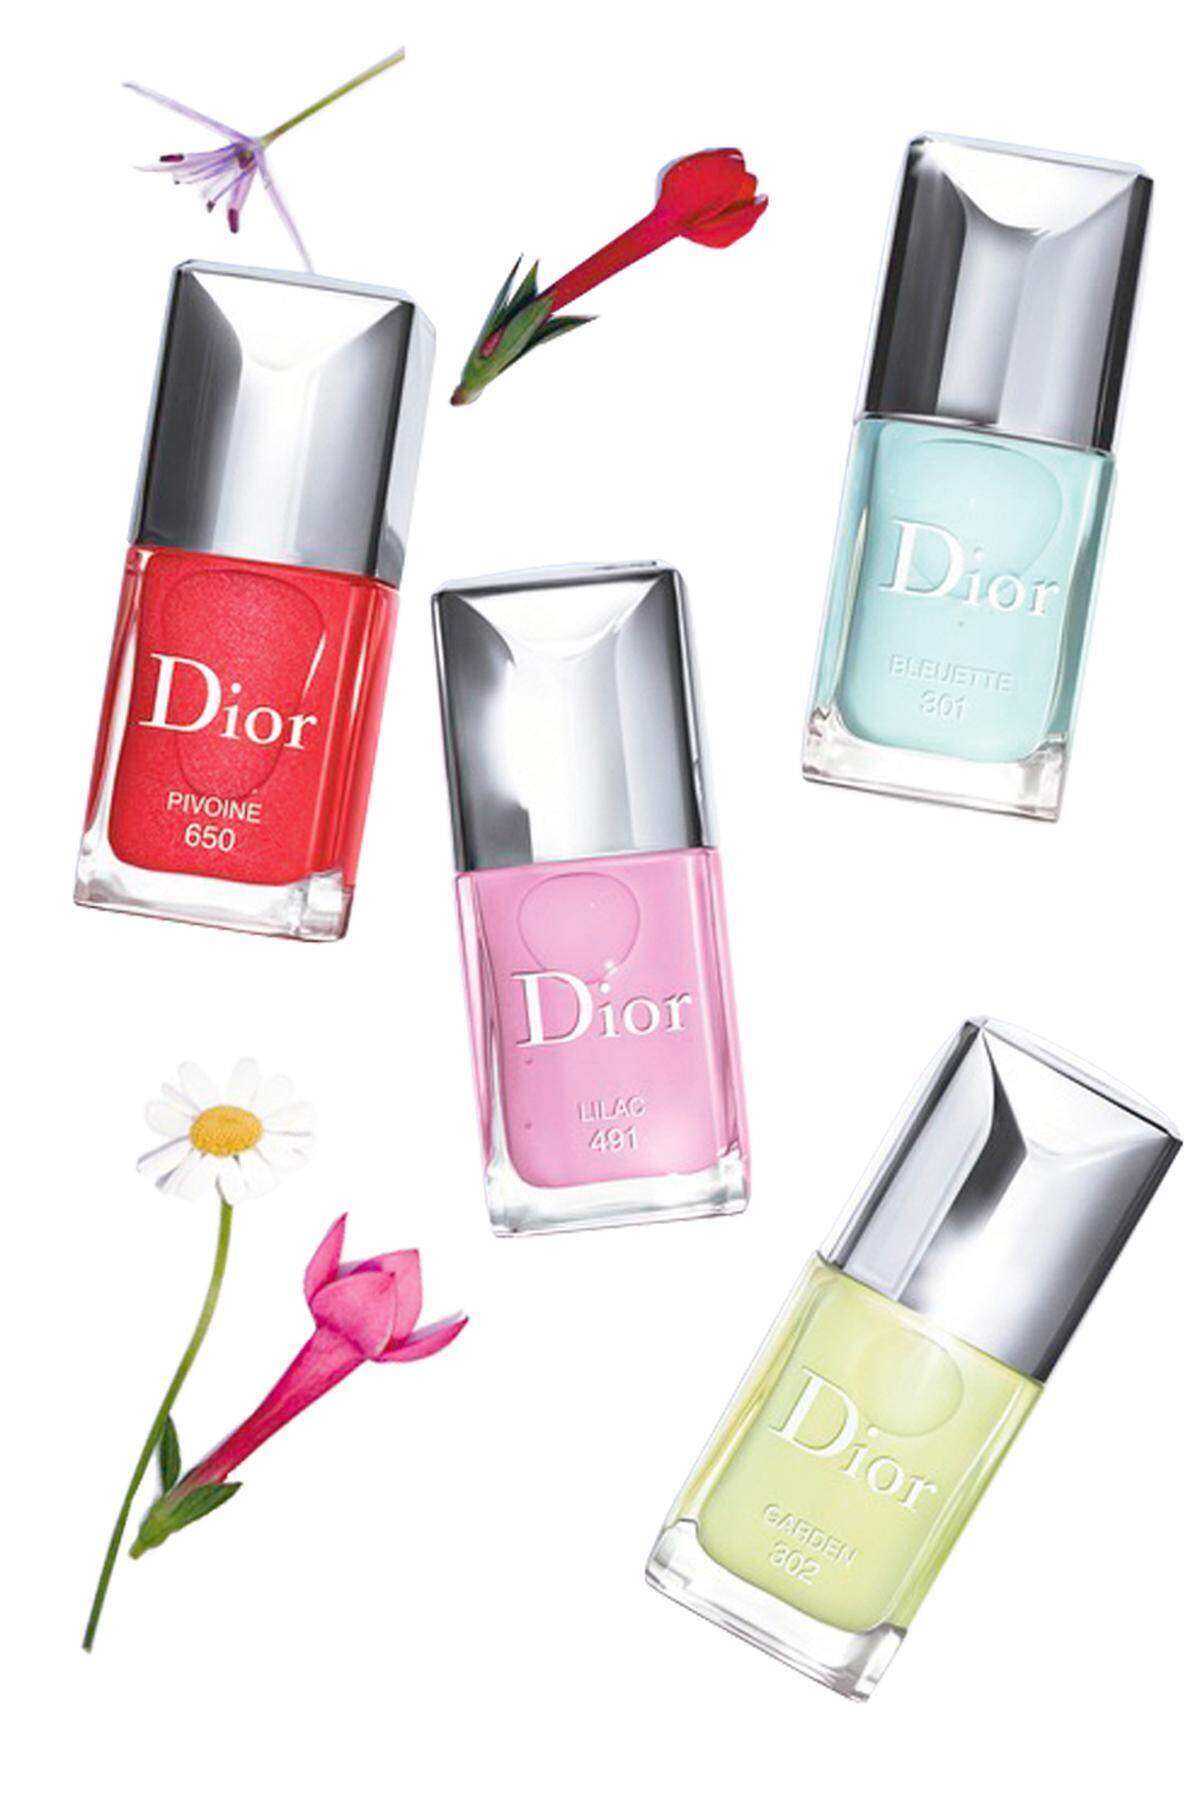 Spätestens im Jänner beginnt für Kosmetikmarken der Frühling, wenn nämlich die neuen Farbpaletten präsentiert werden. Der neue Look von Dior heißt etwa „Glowing Gardens“, passend floral sind auch die neuen, limitierten Nuancen des „Dior Vernis“ (je 27 Euro).